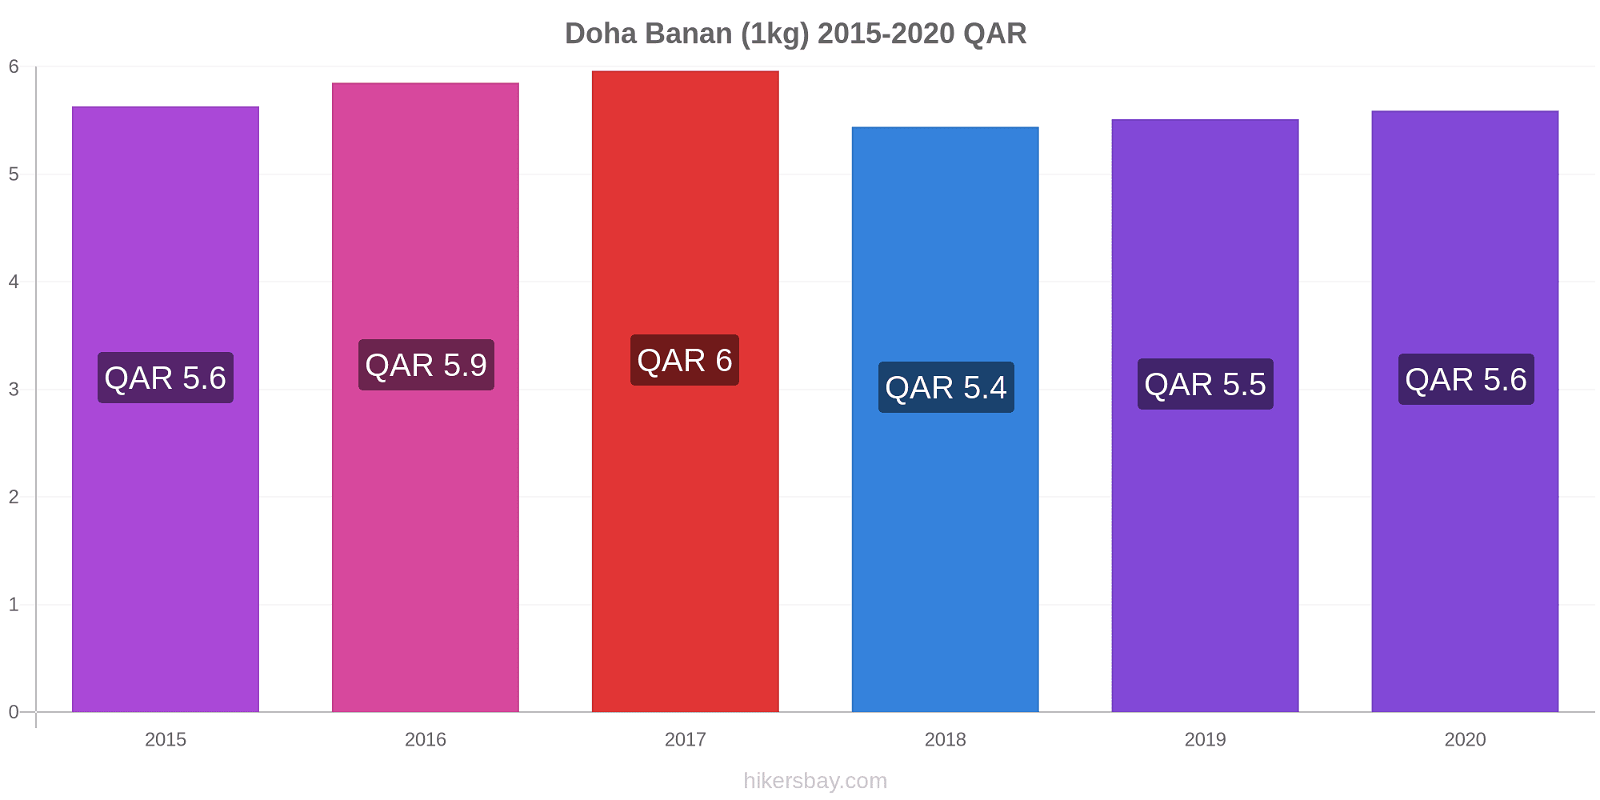 Doha prisændringer Banan (1kg) hikersbay.com